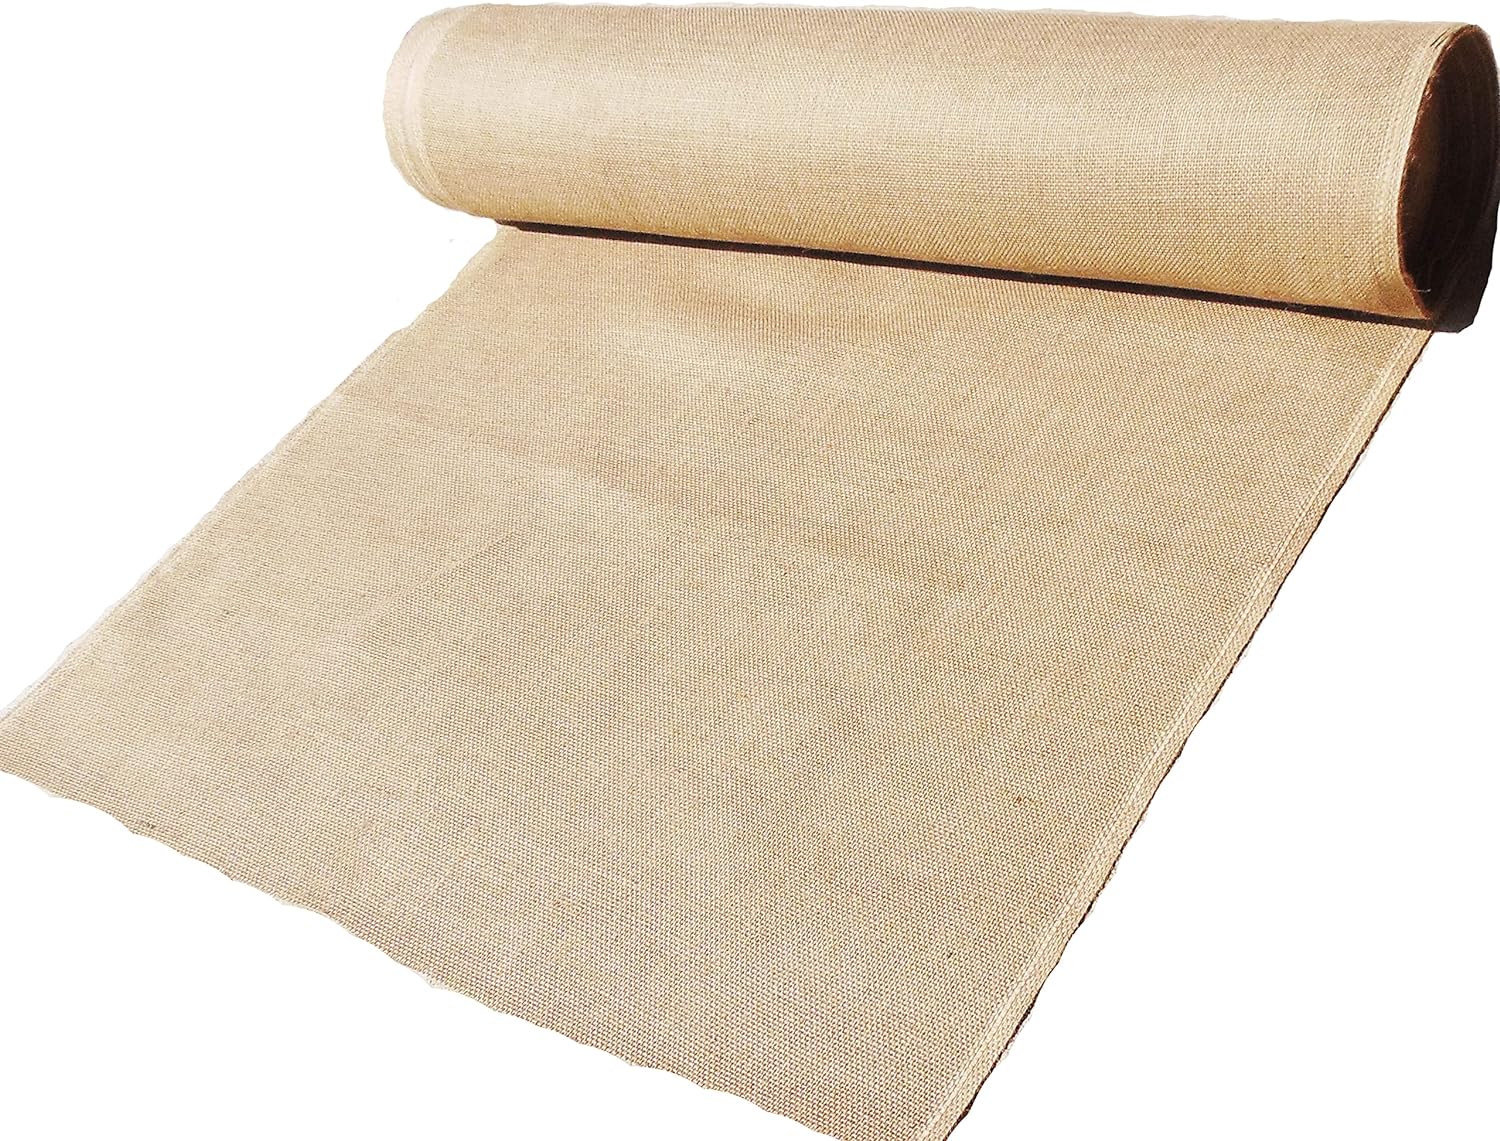 Burlap Fabric Roll, Natural Burlap Garden Fabric Premium